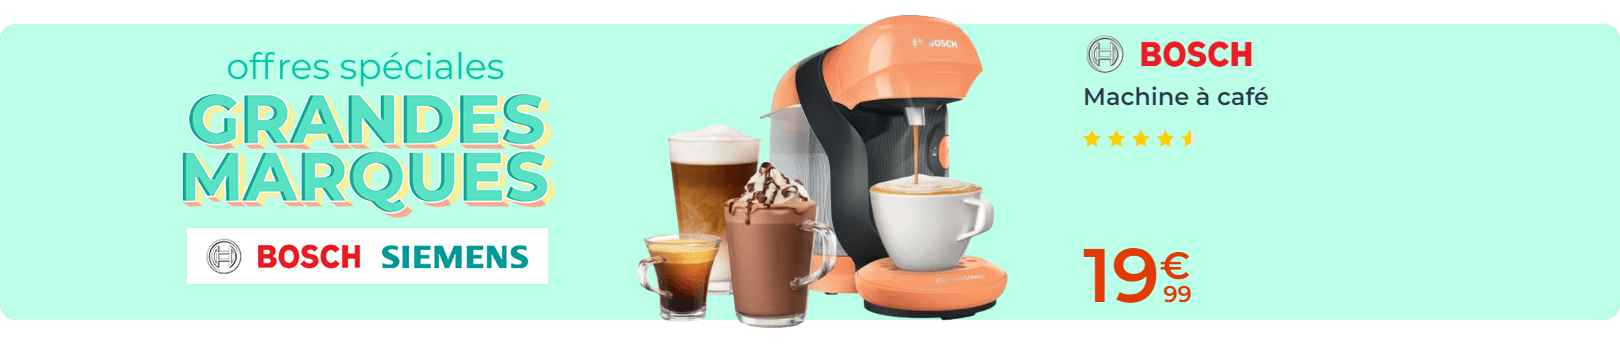 Offres spéciales BSH Machine à café